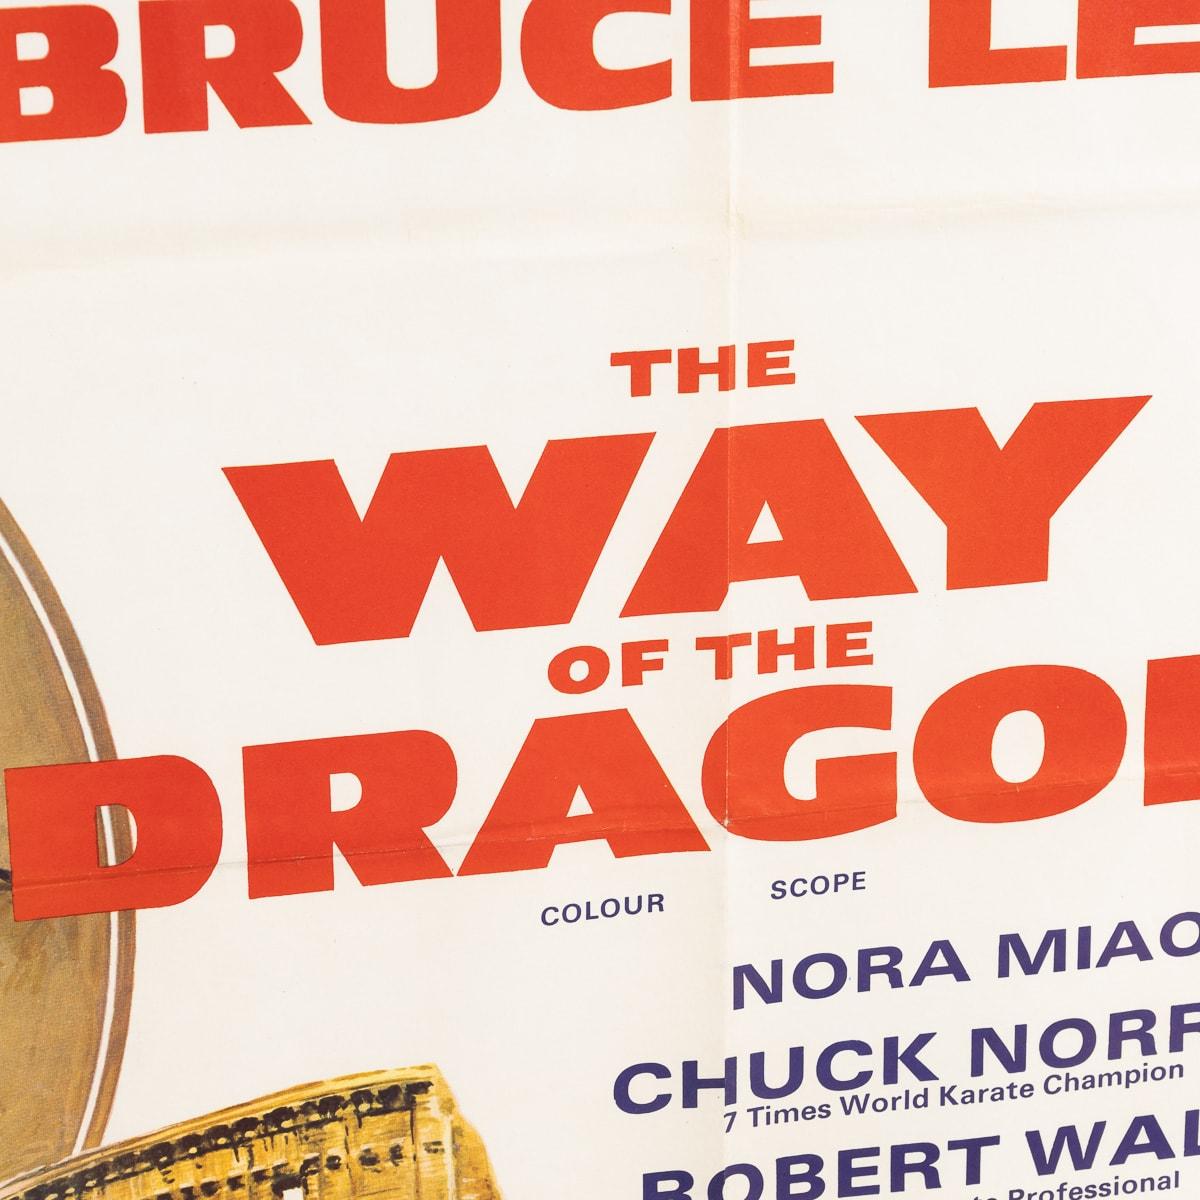 A Framed Original British Quad Bruce Lee 